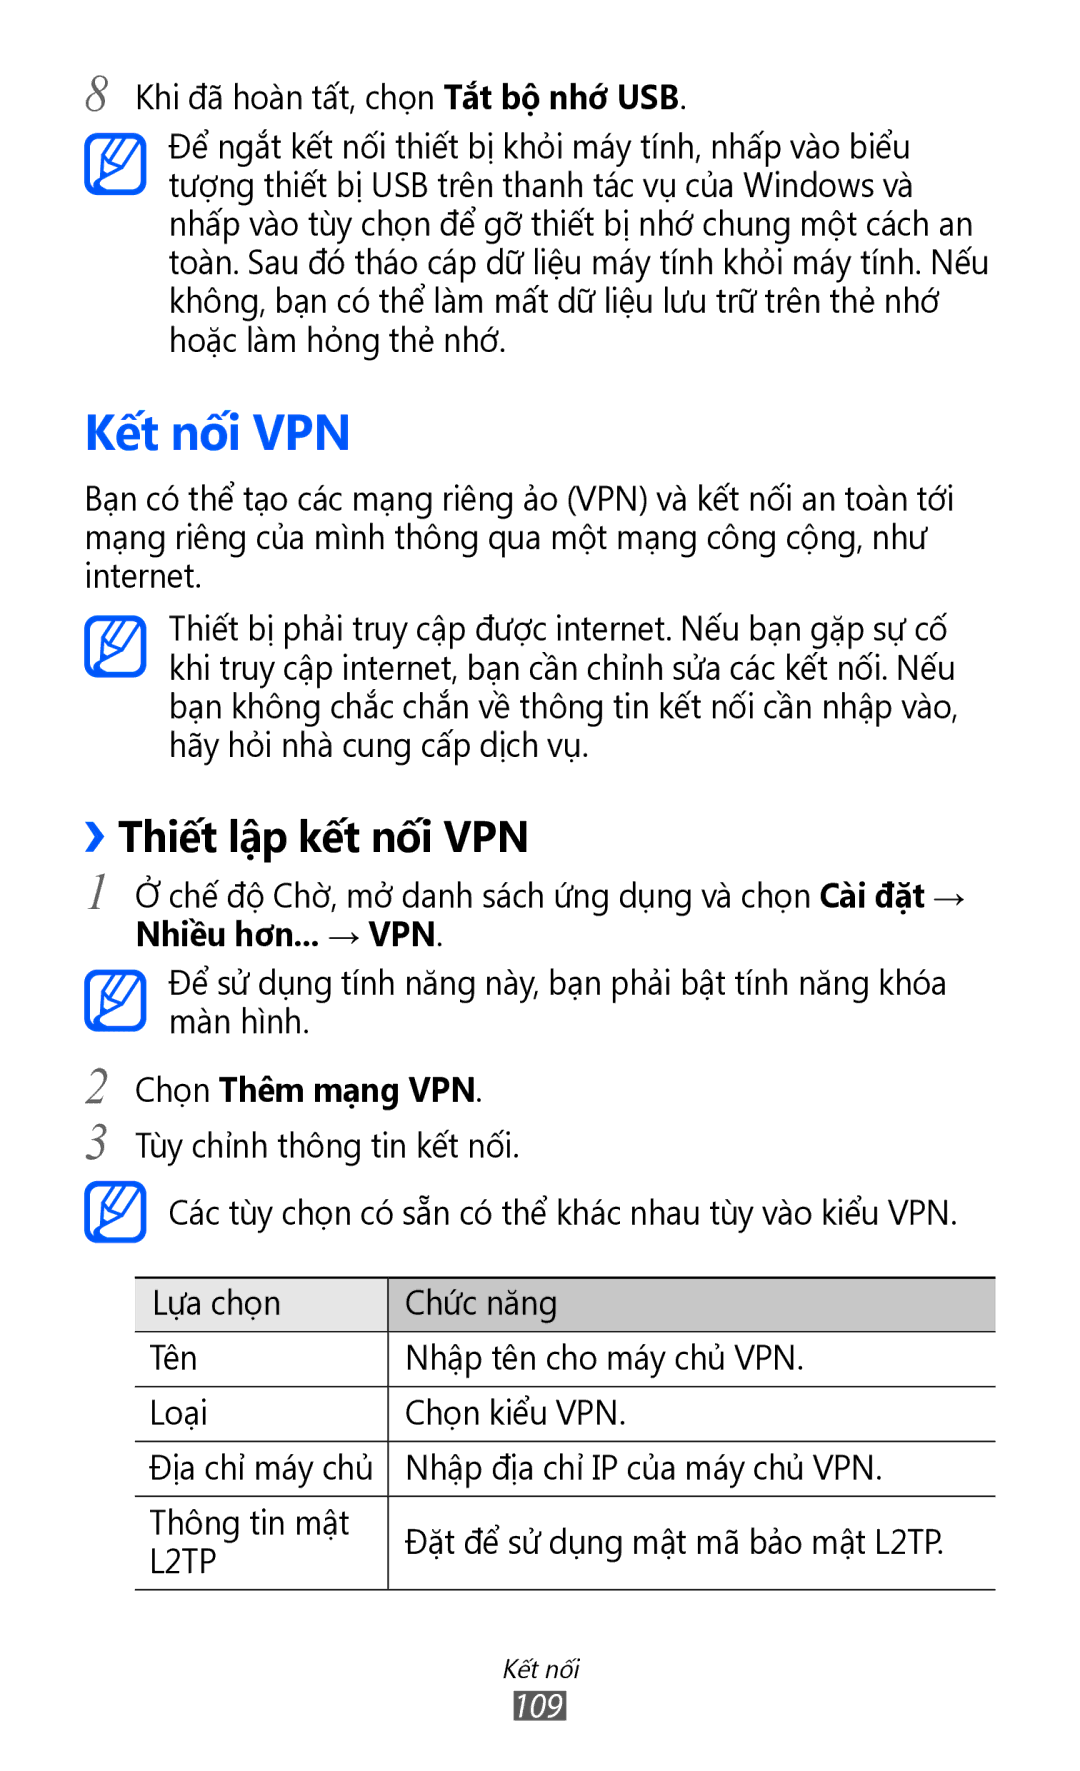 Samsung GT-I9100RWAXXV, GT-I9100LKAXXV, GT-I9100RWAXEV manual Kết nối VPN, ››Thiết lập kết nối VPN, Chọn Thêm mạng VPN 